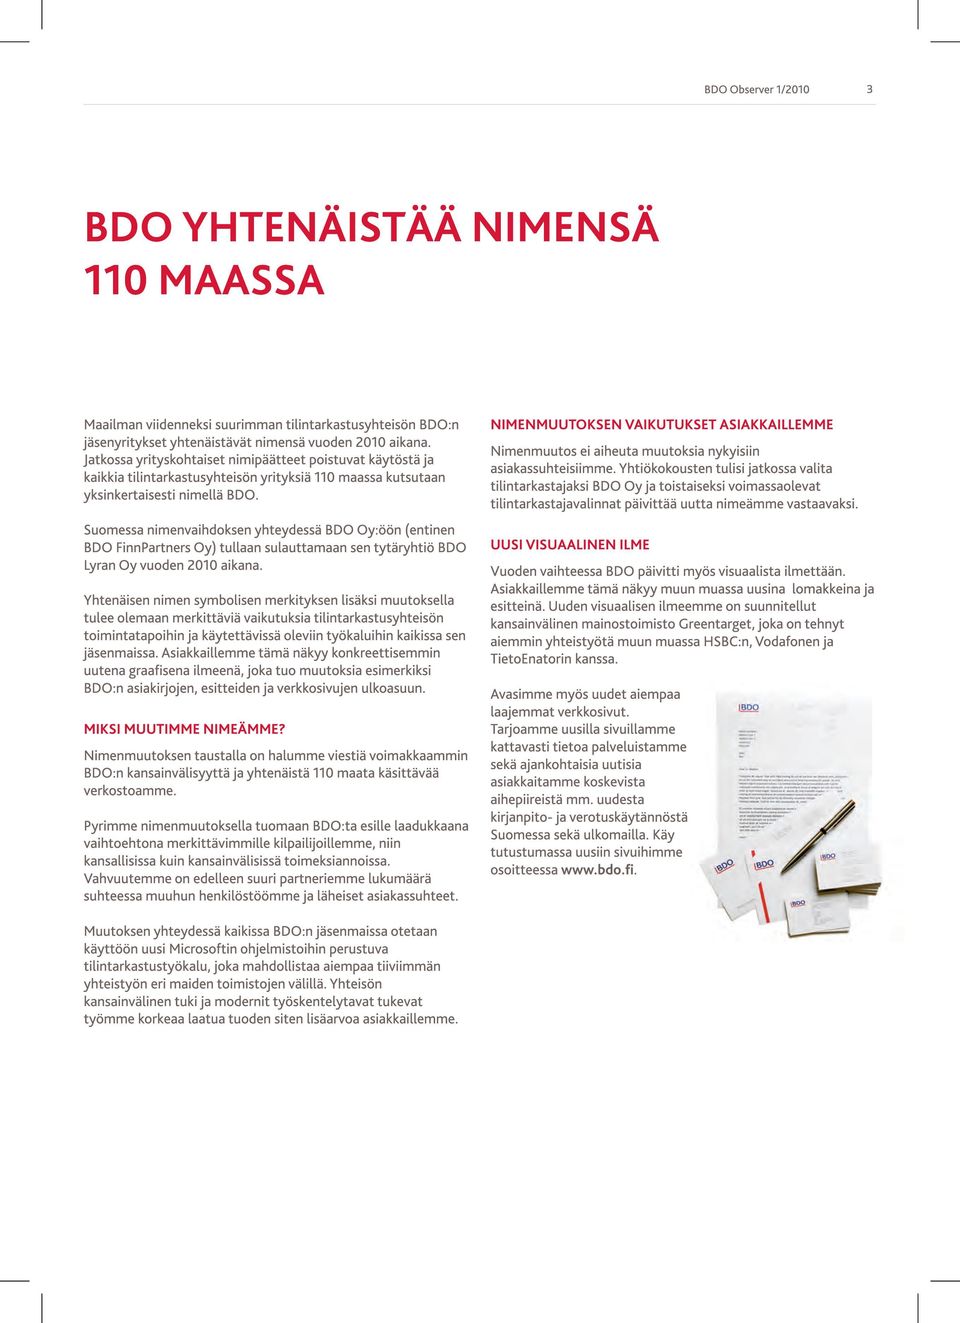 Suomessa nimenvaihdoksen yhteydessä BDO Oy:öön (entinen BDO FinnPartners Oy) tullaan sulauttamaan sen tytäryhtiö BDO Lyran Oy vuoden 201 0 aikana.